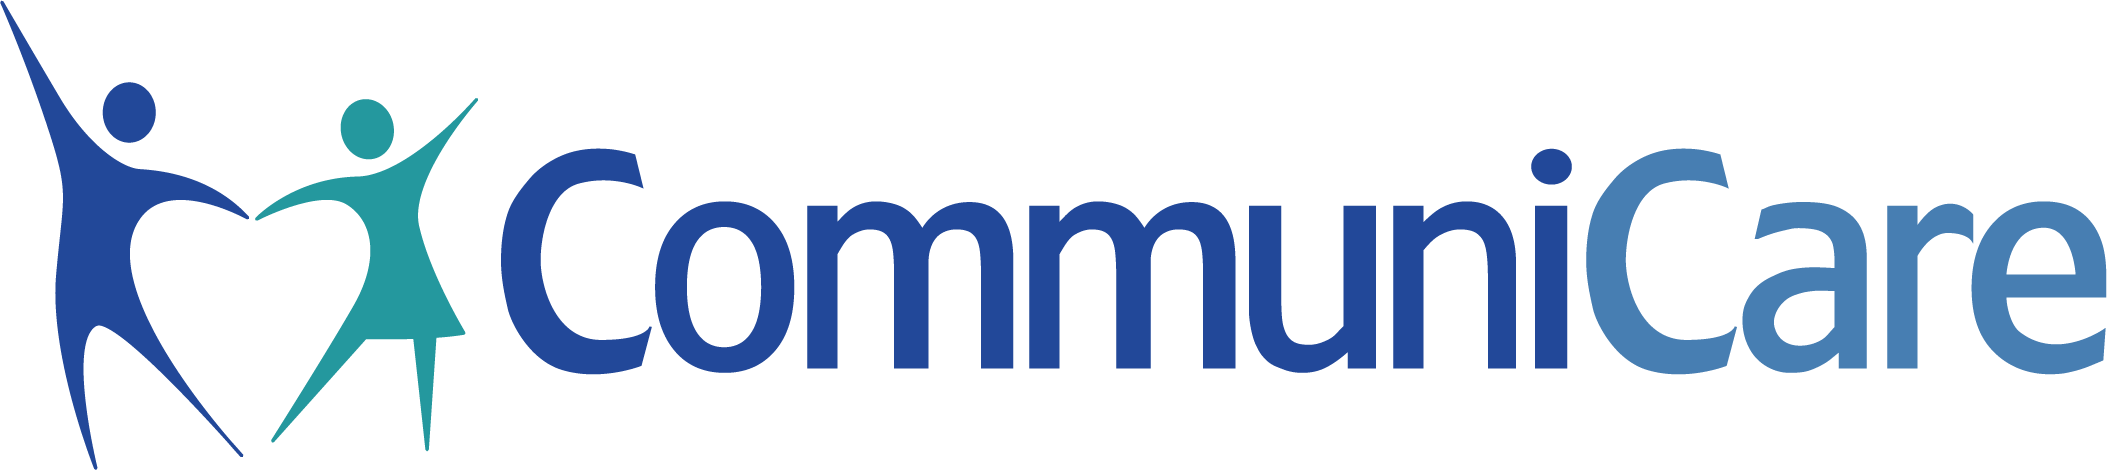 Communicare Health Center Company Logo